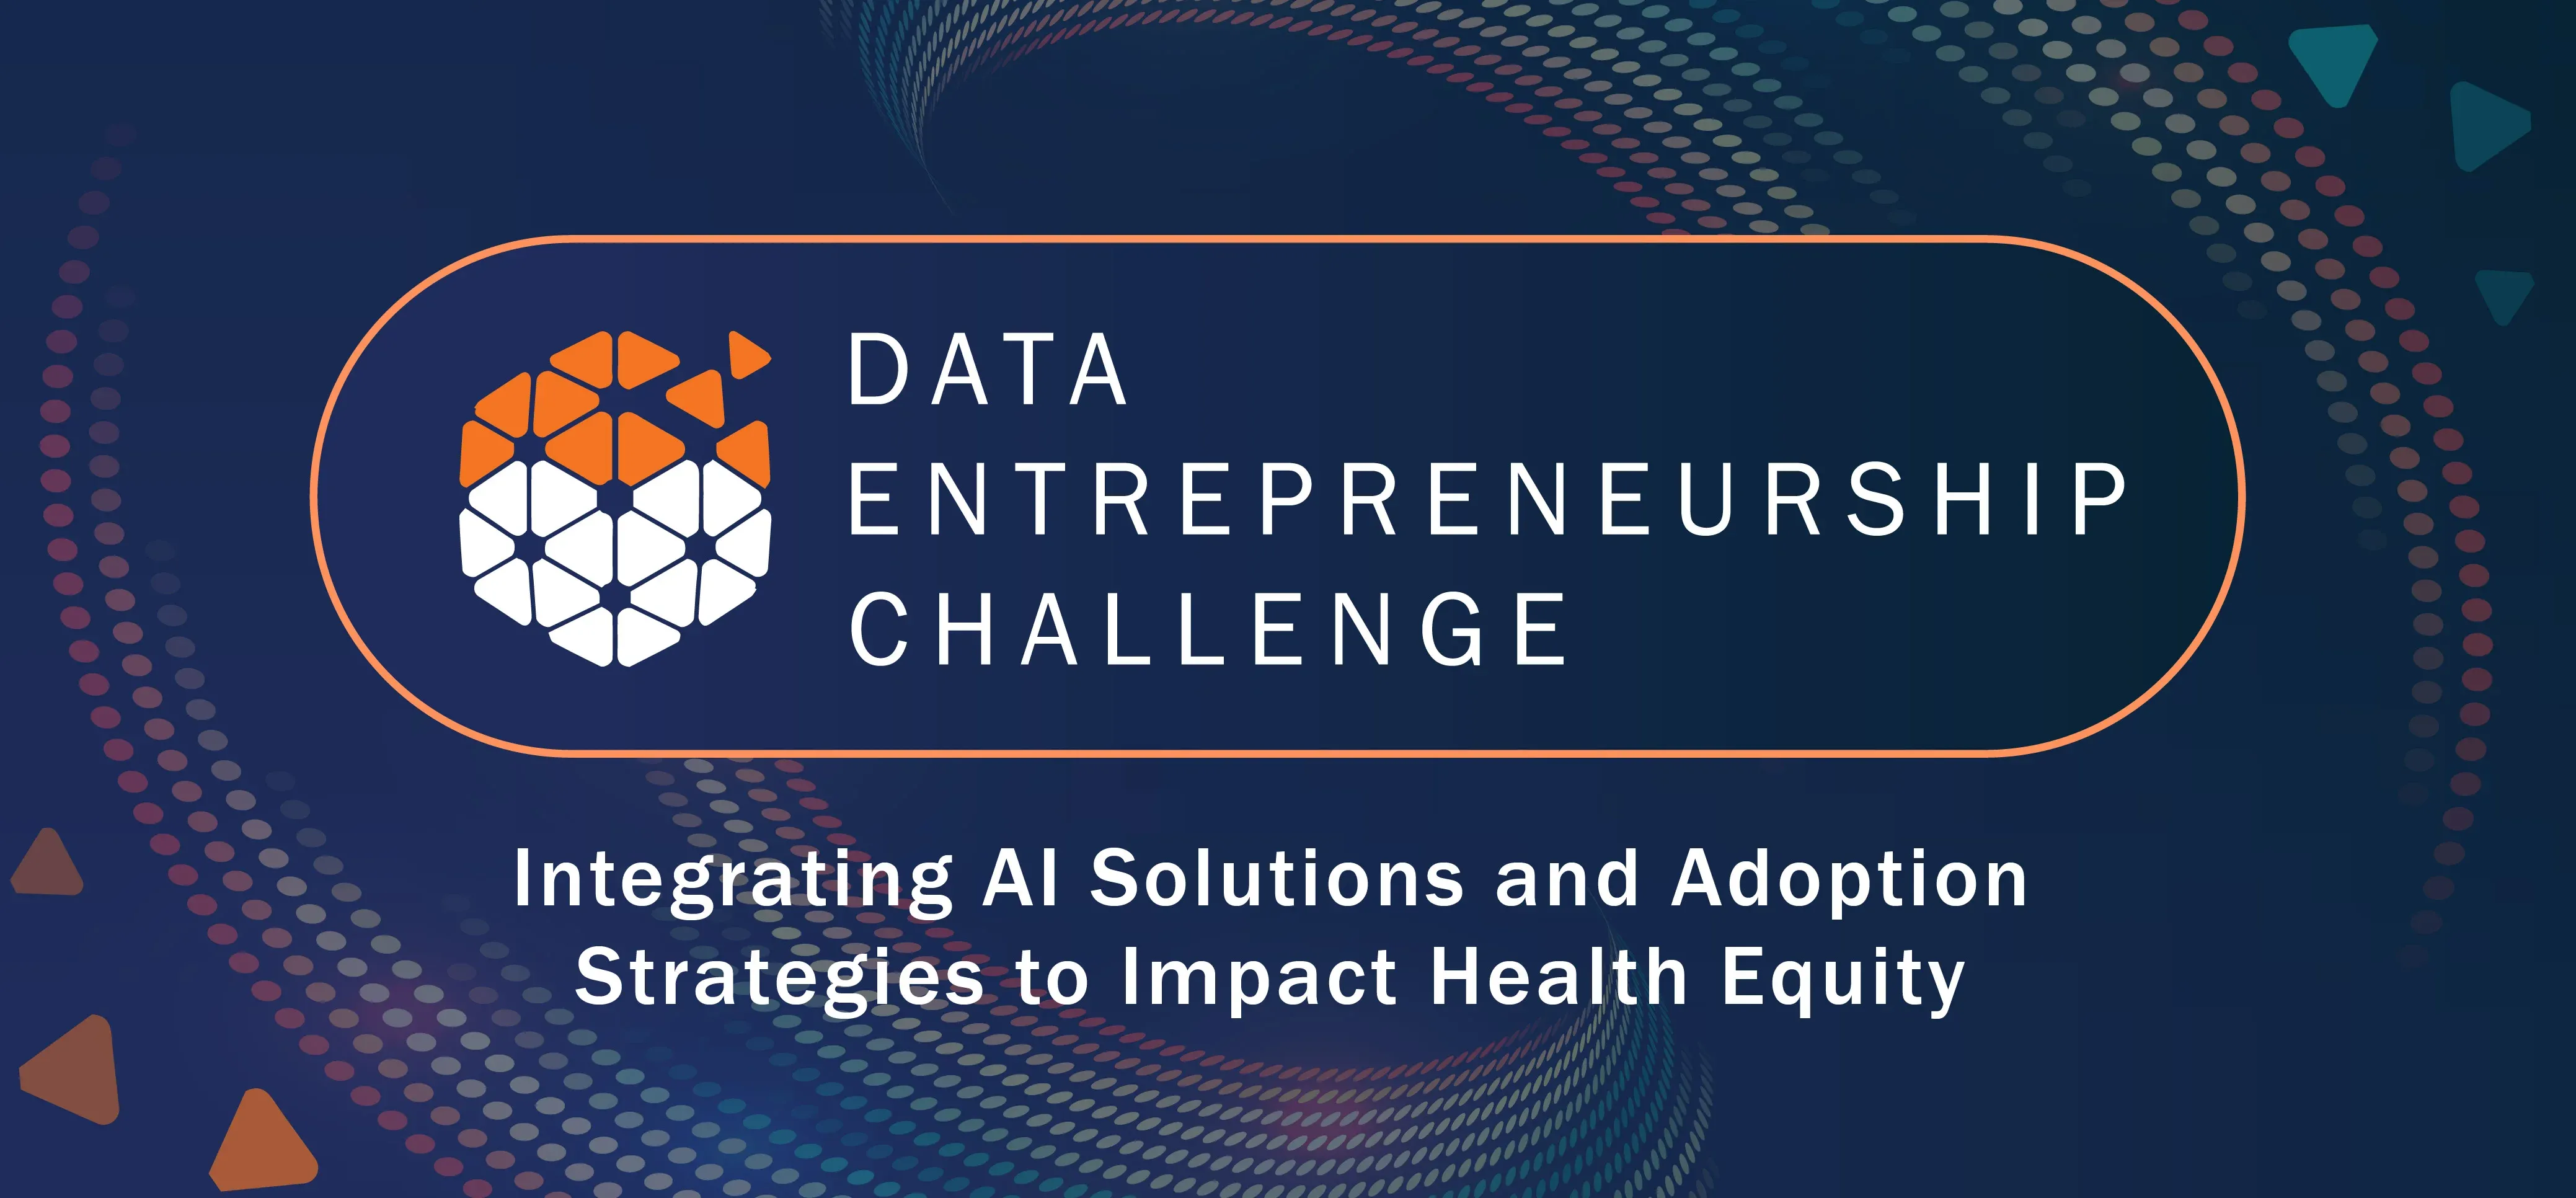 Data Entrepreneurship Challenge